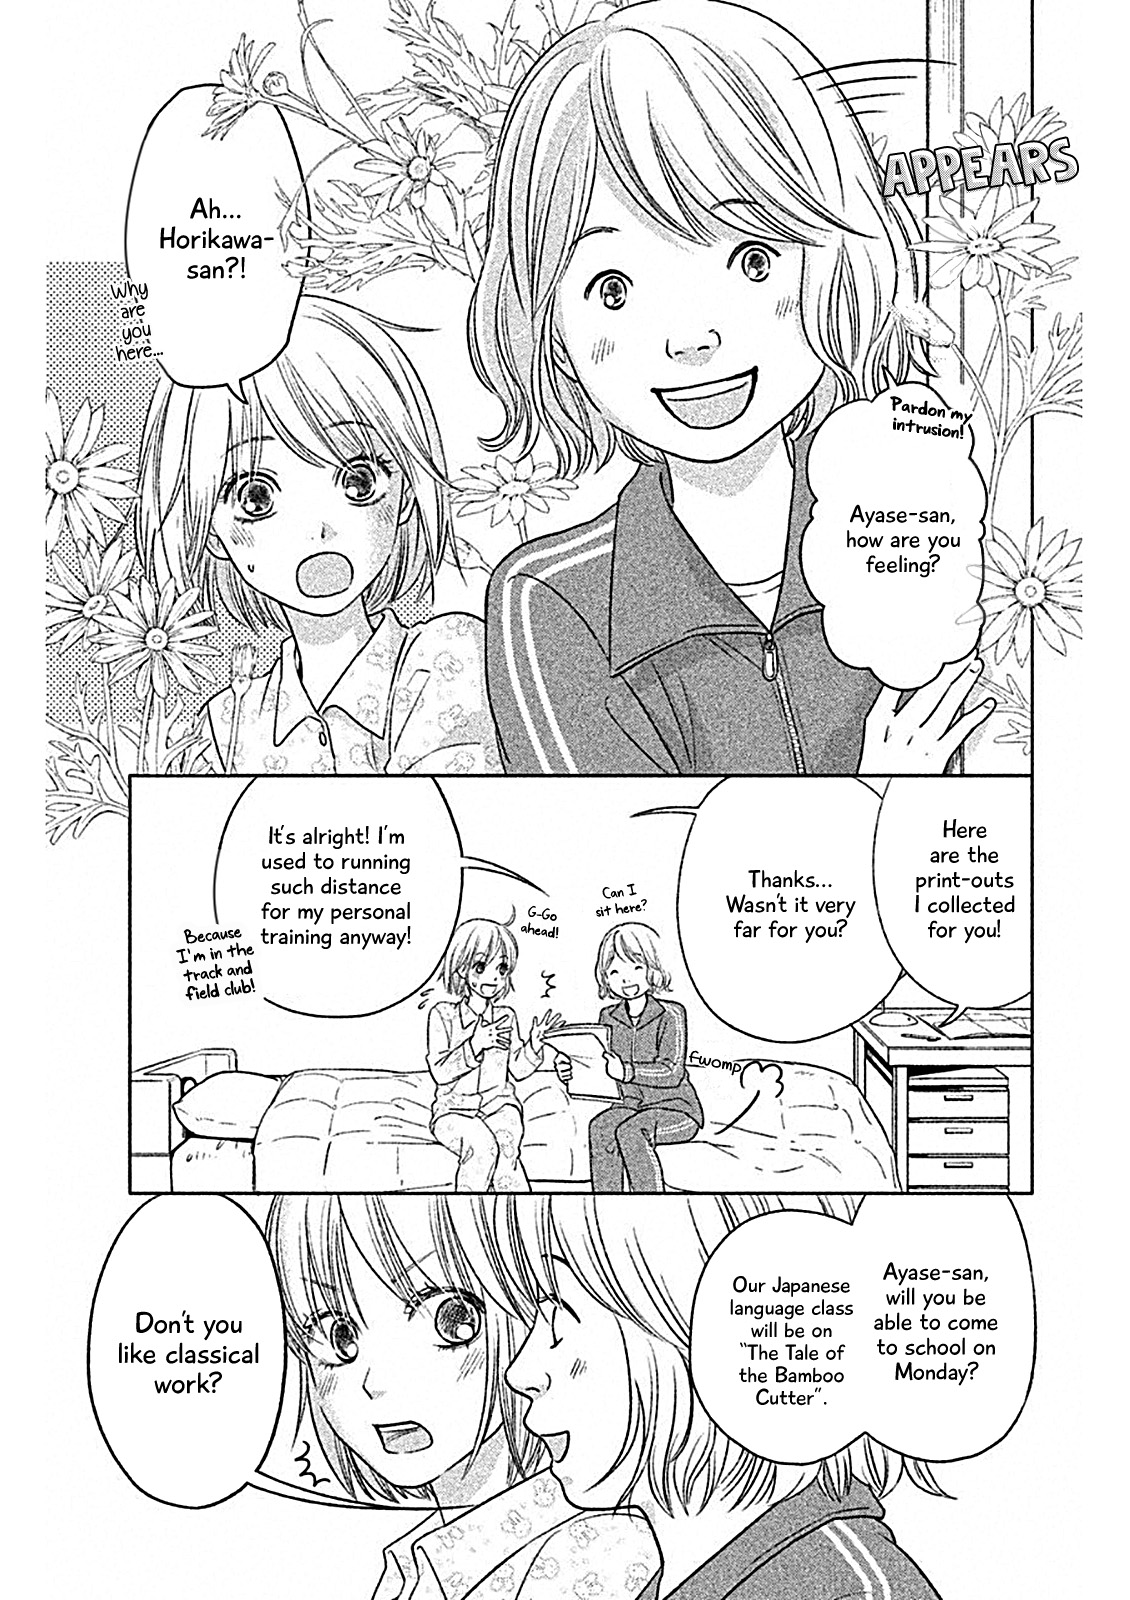 Chihayafuru: Middle School Arc Vol. 1 Ch. 2 2nd Poem